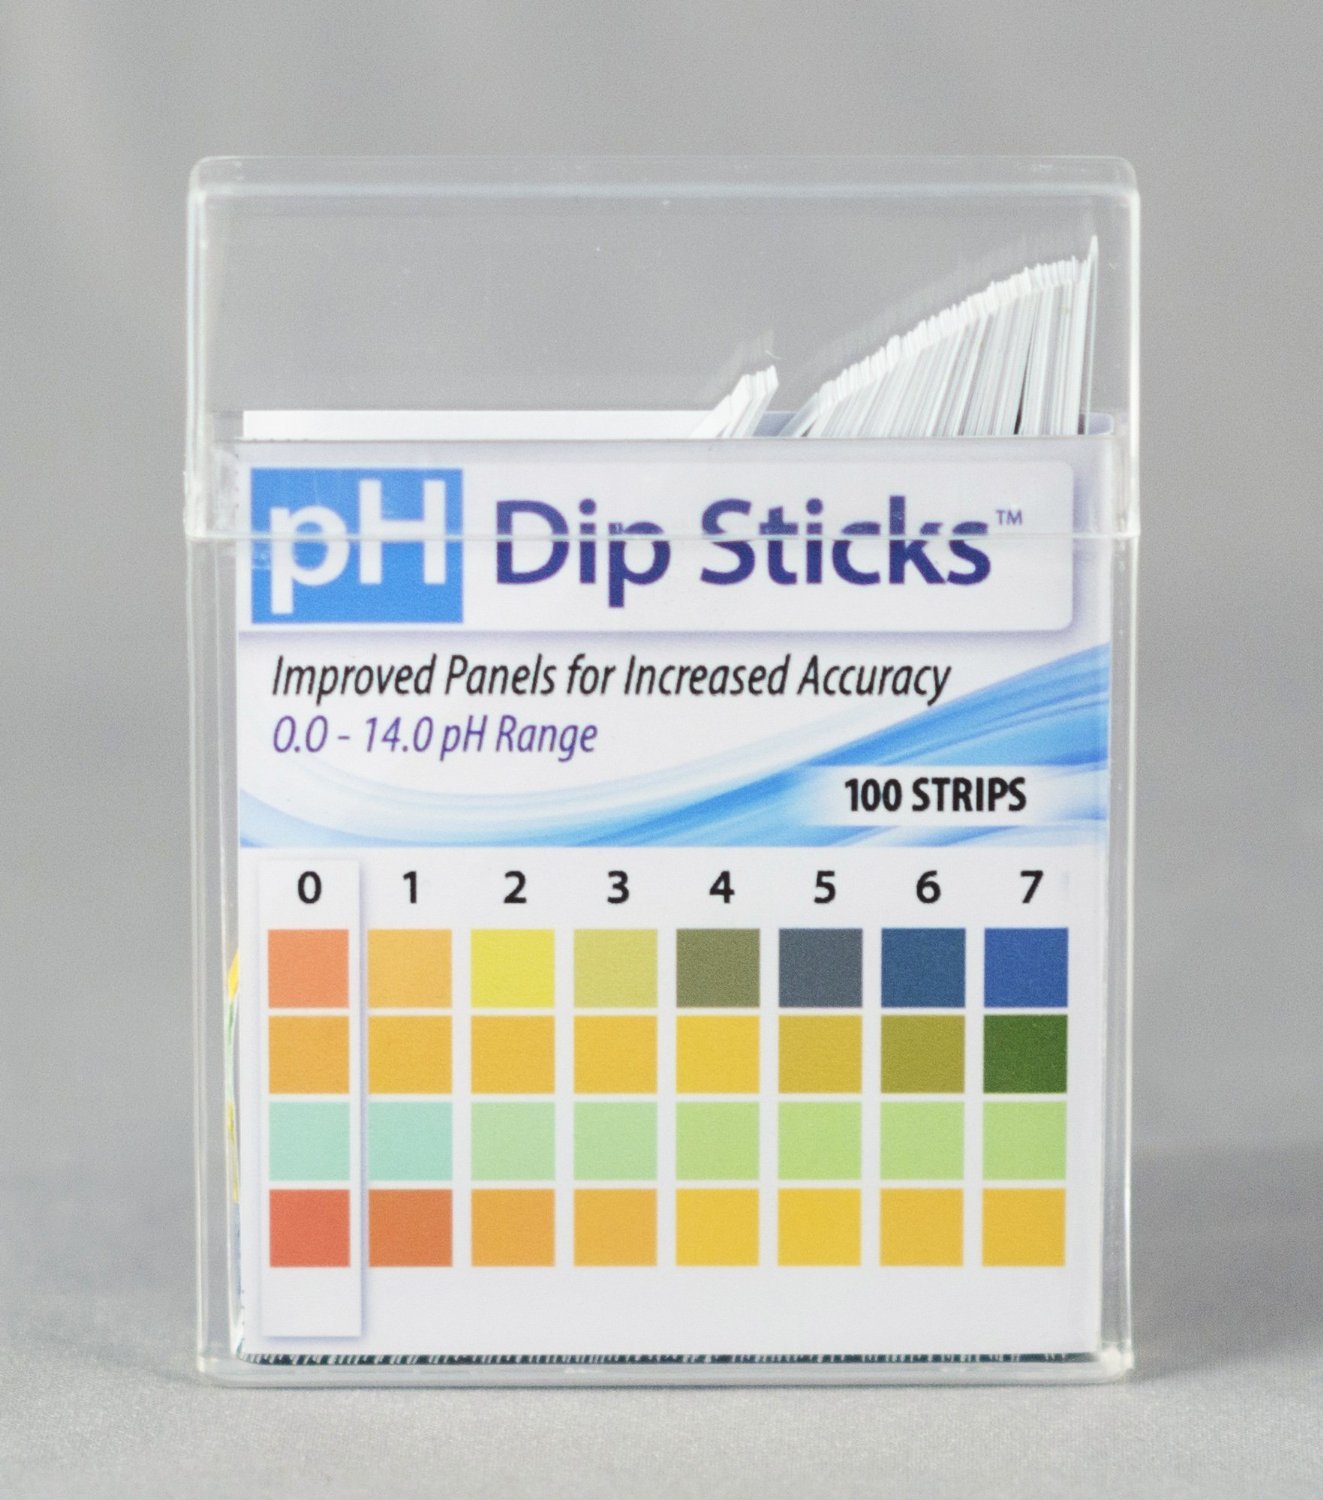  Tiras de prueba de pH universales (0-14) - Kit de tiras de  prueba de pH con libro electrónico - 150 tiras de prueba de pH rápidas y  fáciles - Kit de